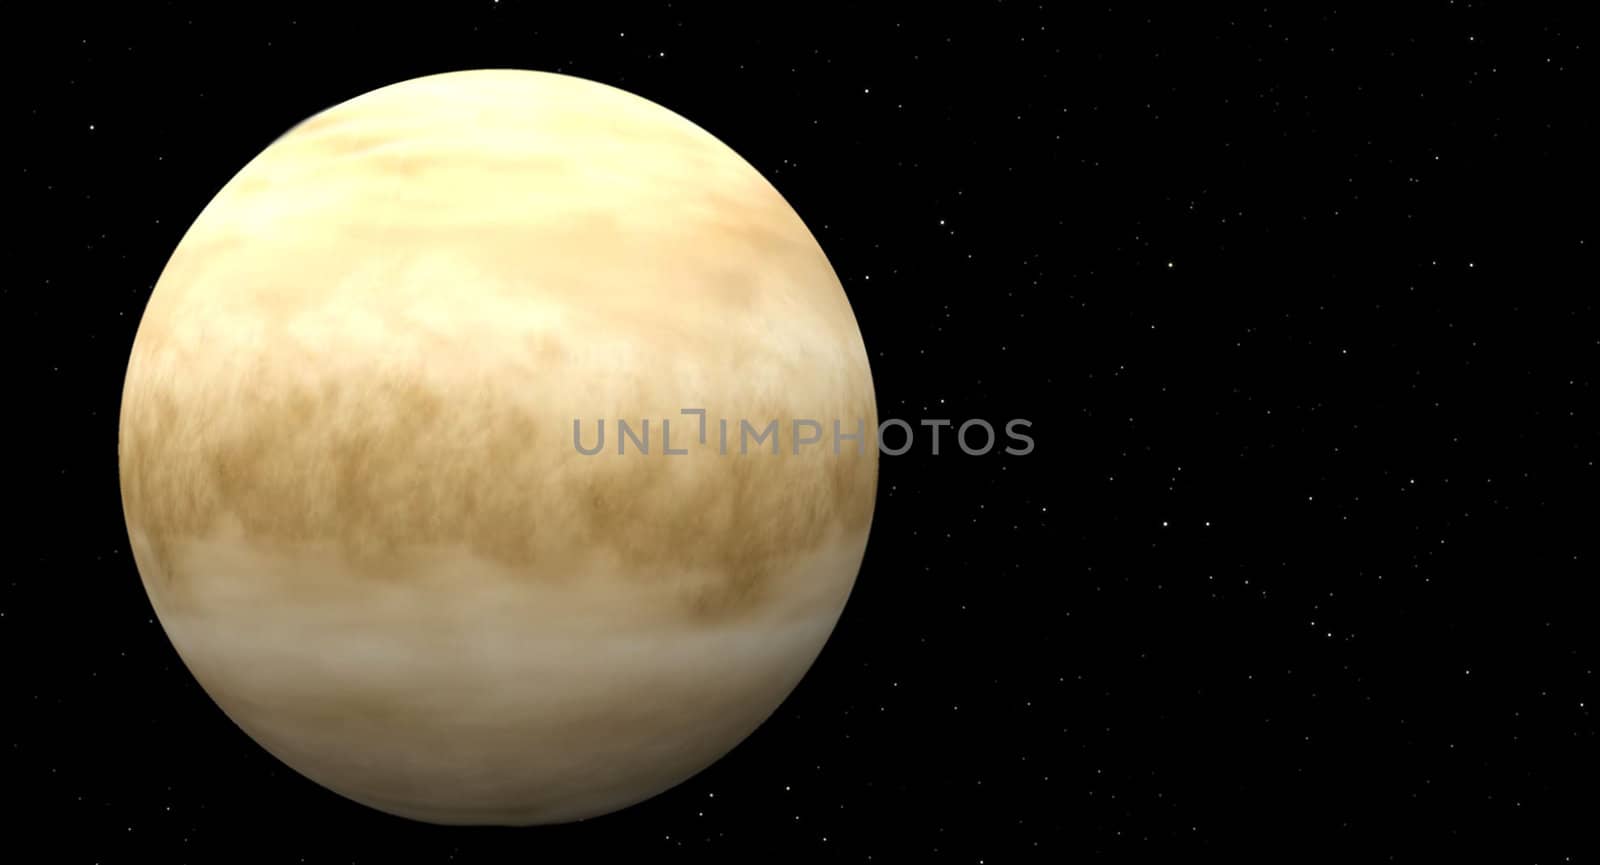 planet Venus